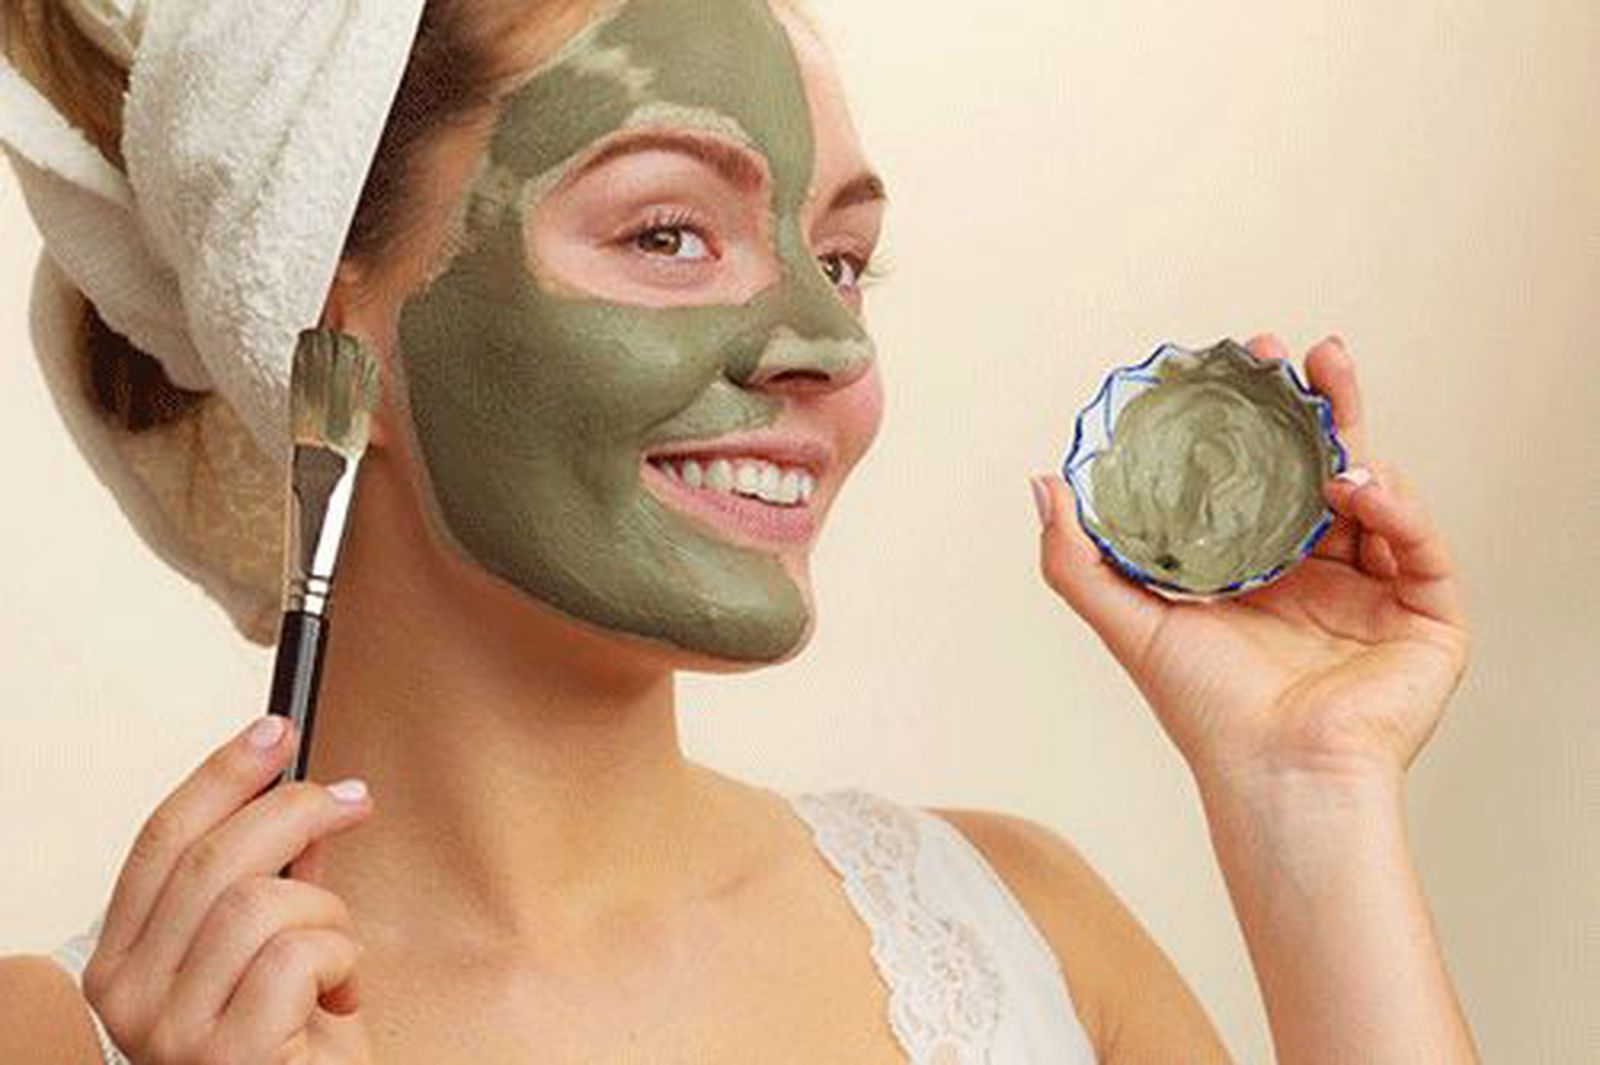 Sử dụng mặt nạ giải độc giúp loại bỏ các tạp chất trên da